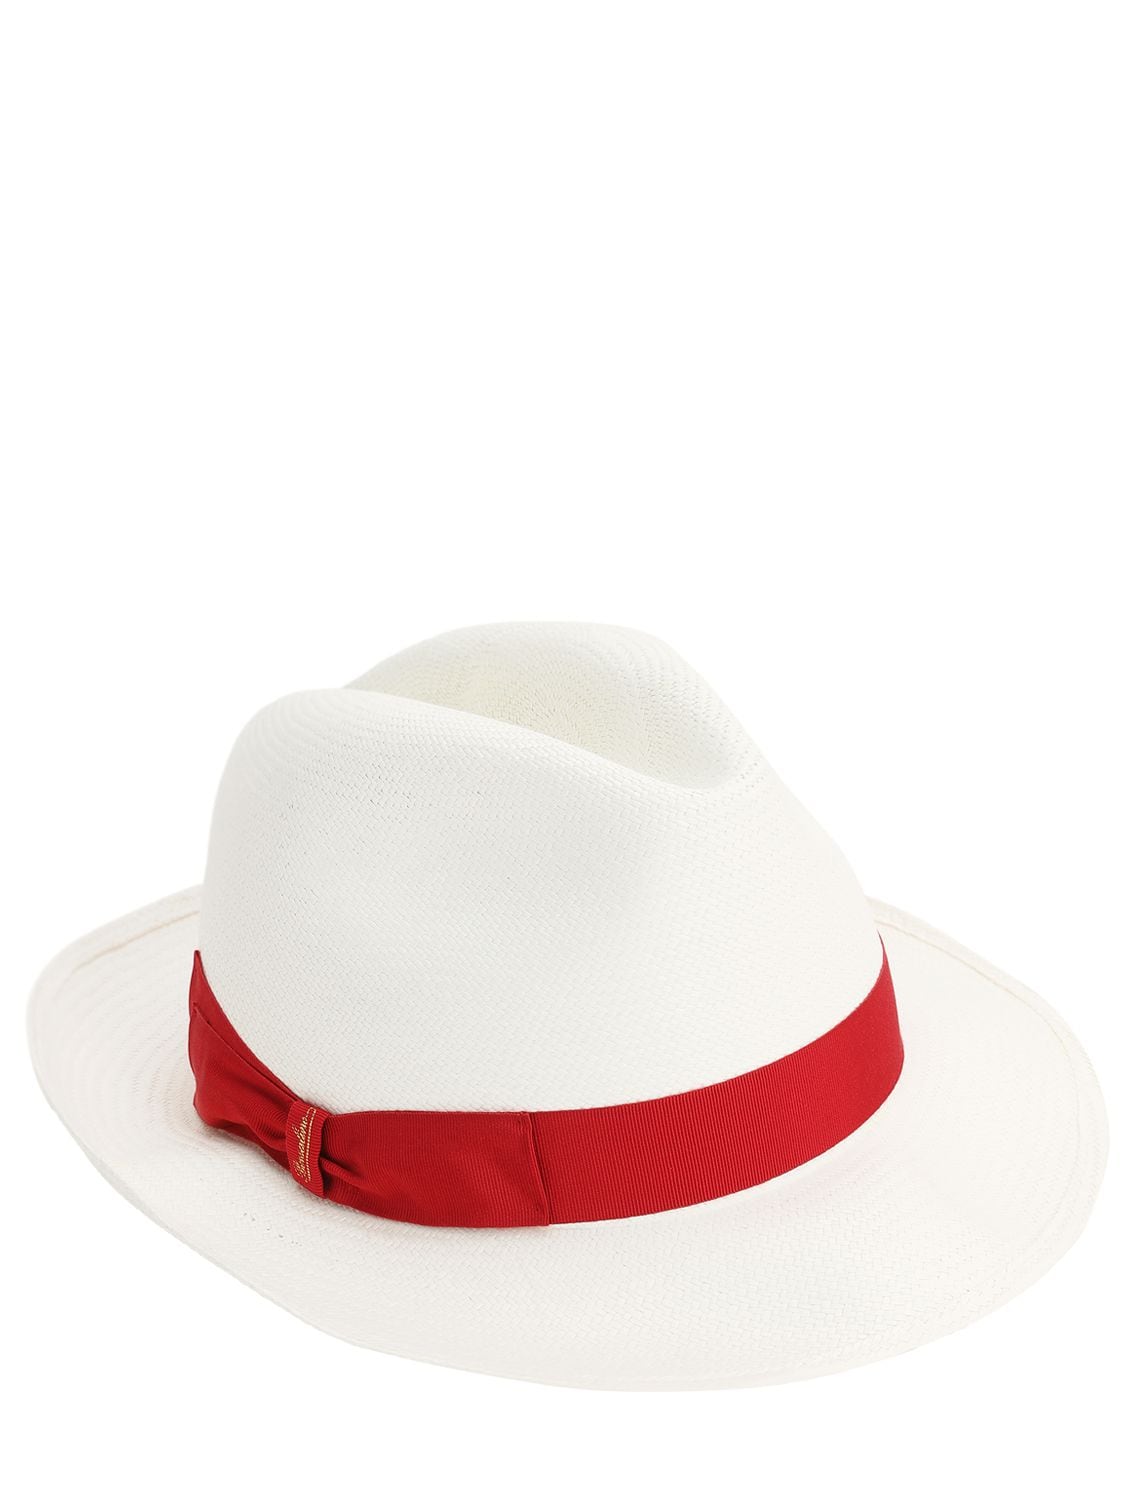 Borsalino Fine Straw Panama Hat In White,rubino